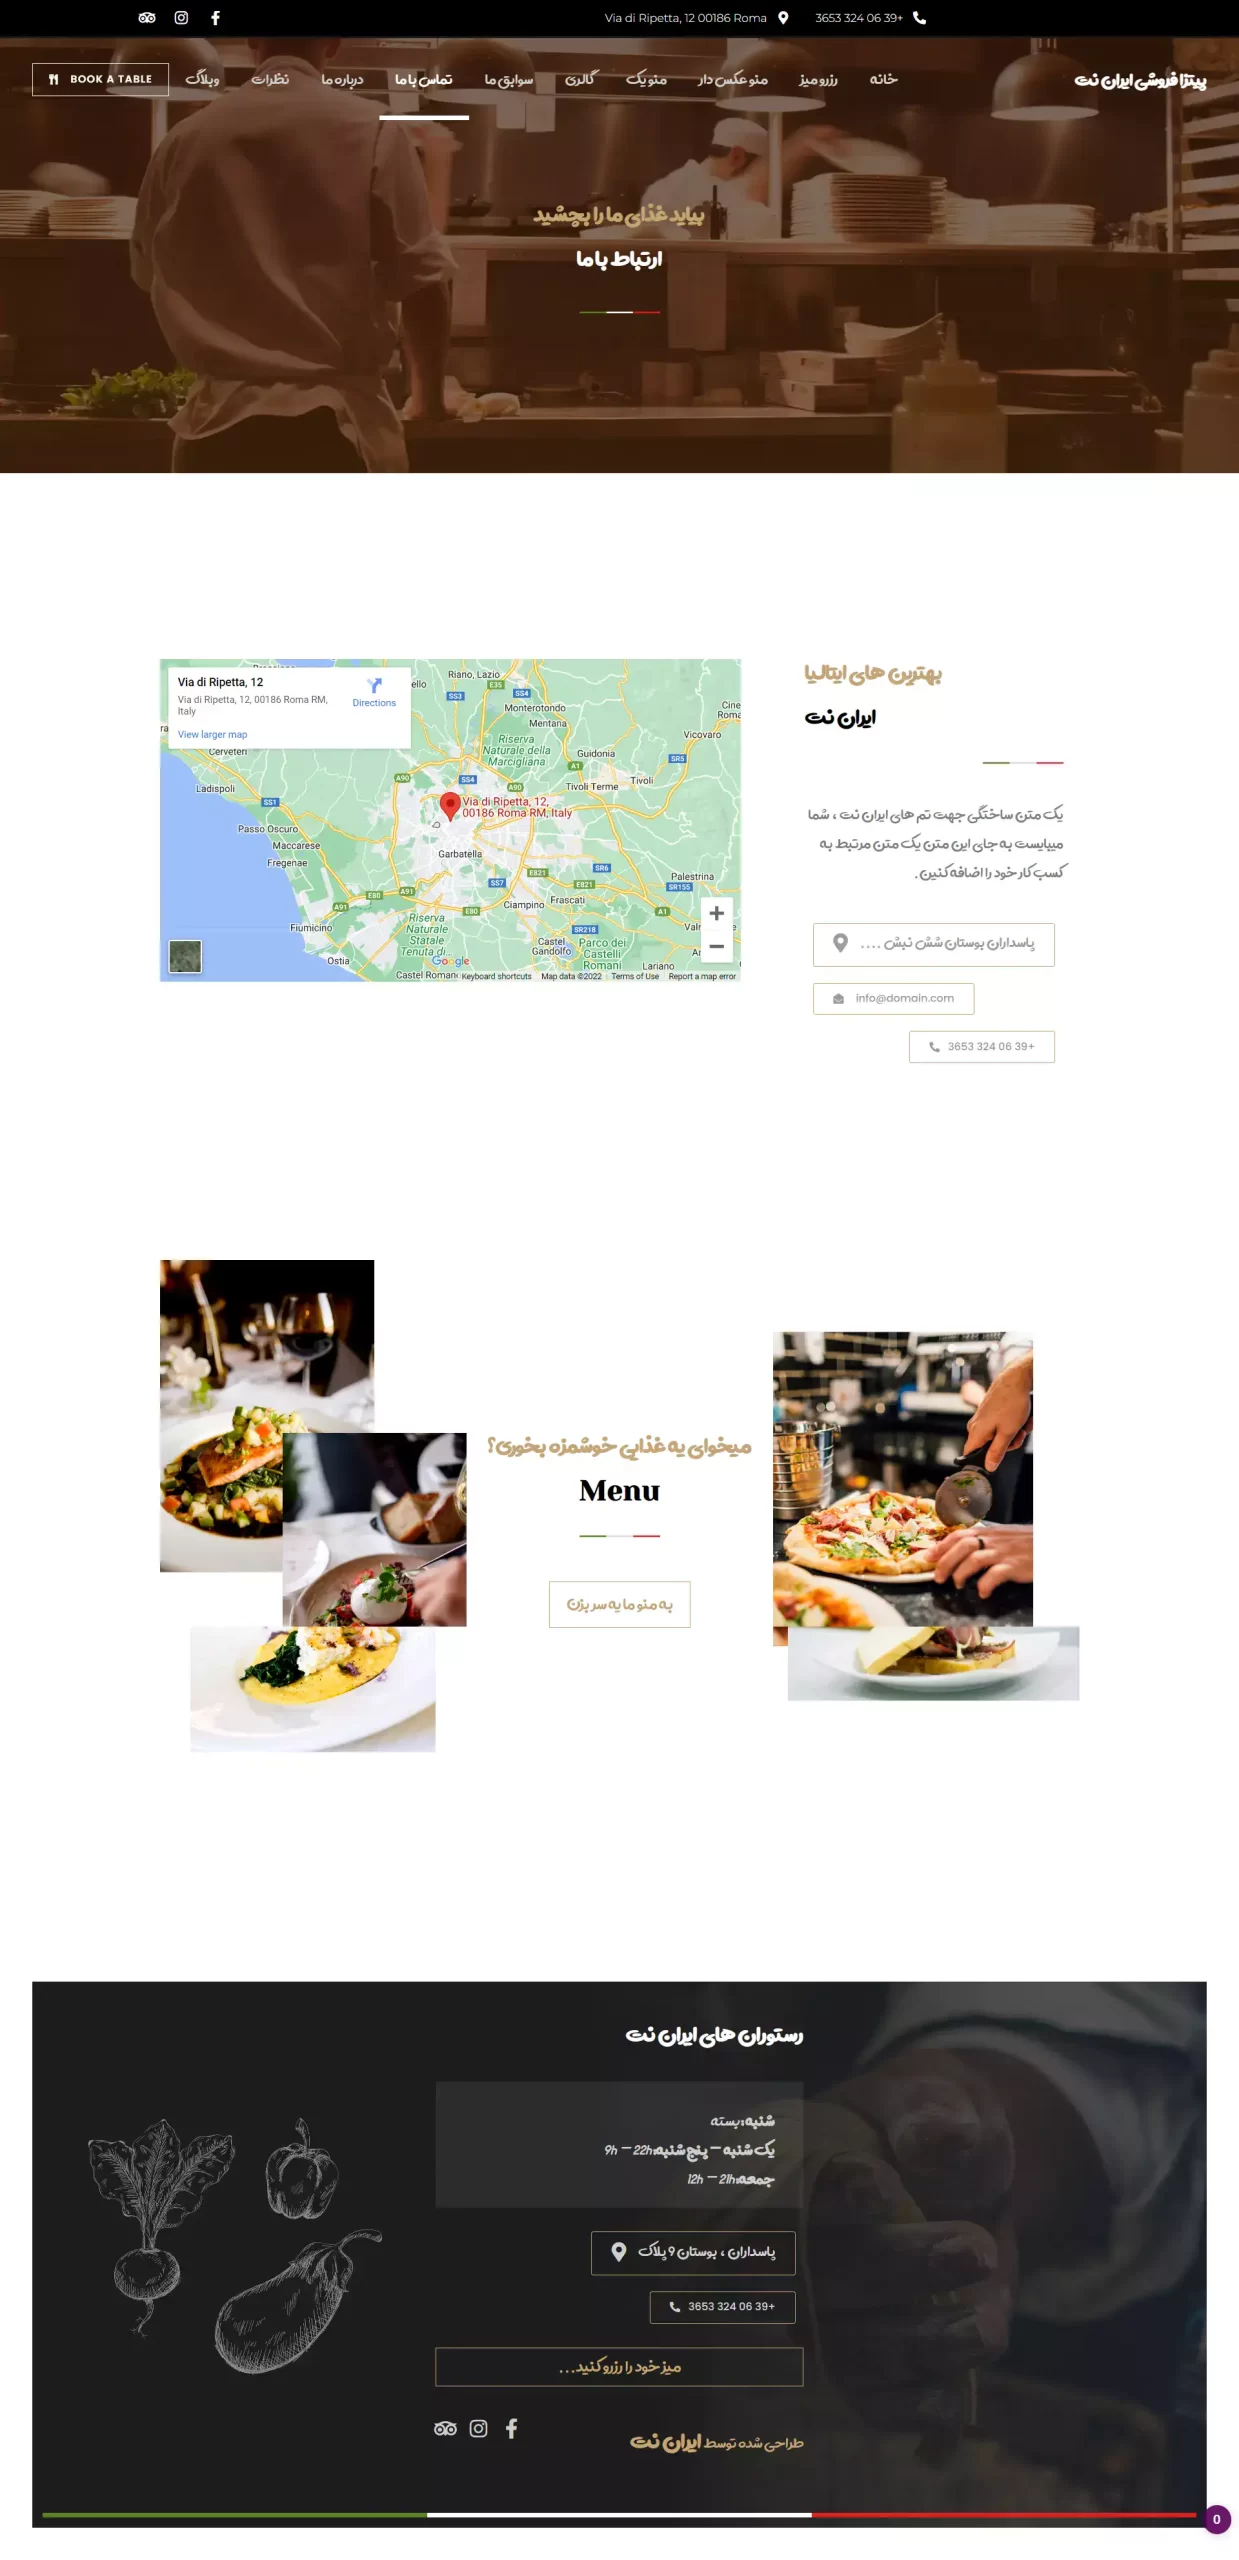 صفحه-تماس-قالب-آماده-سایت-رستورانی-تهیه-غذا-ایتالیایی-فست-فود